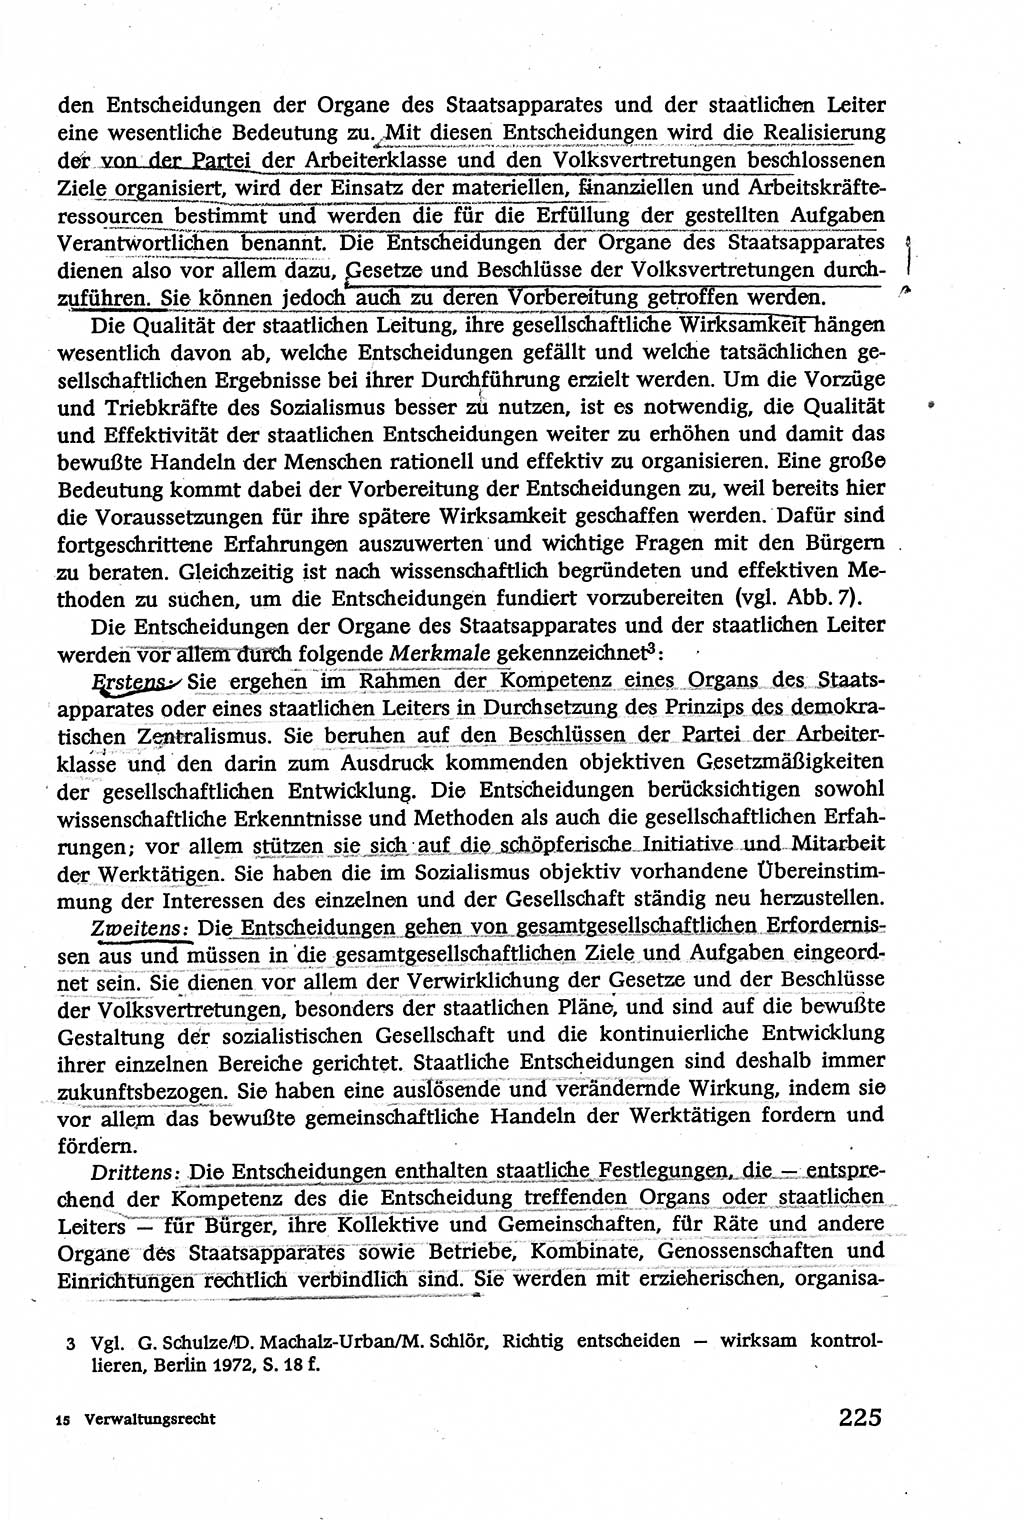 Verwaltungsrecht [Deutsche Demokratische Republik (DDR)], Lehrbuch 1979, Seite 225 (Verw.-R. DDR Lb. 1979, S. 225)